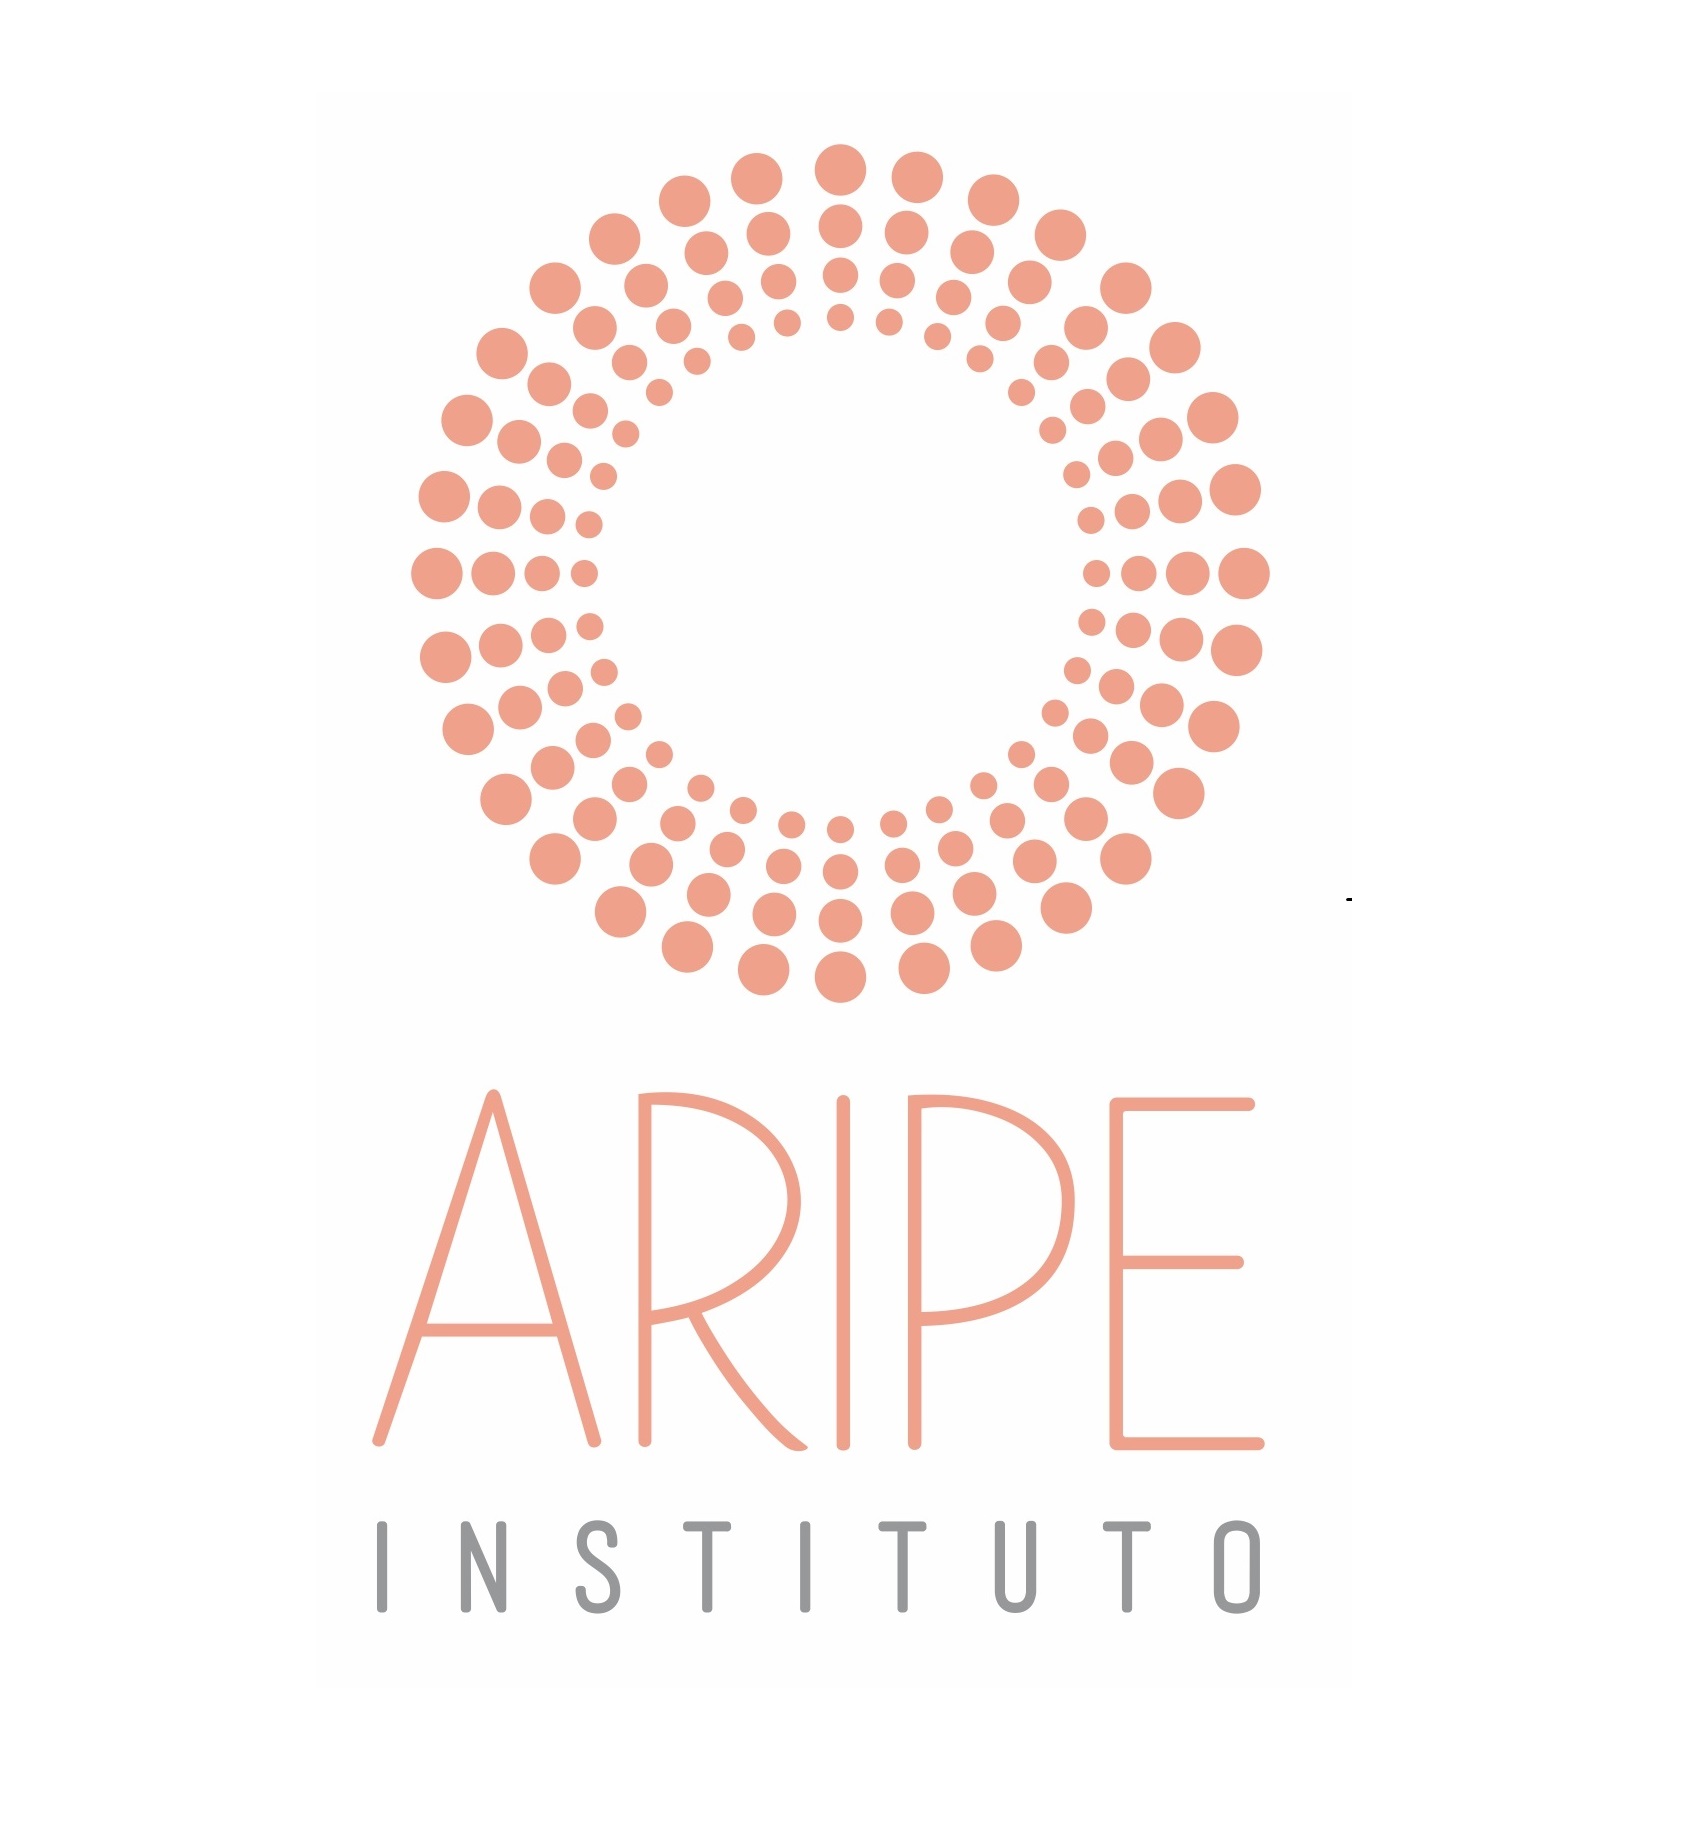 Instituto Aripe